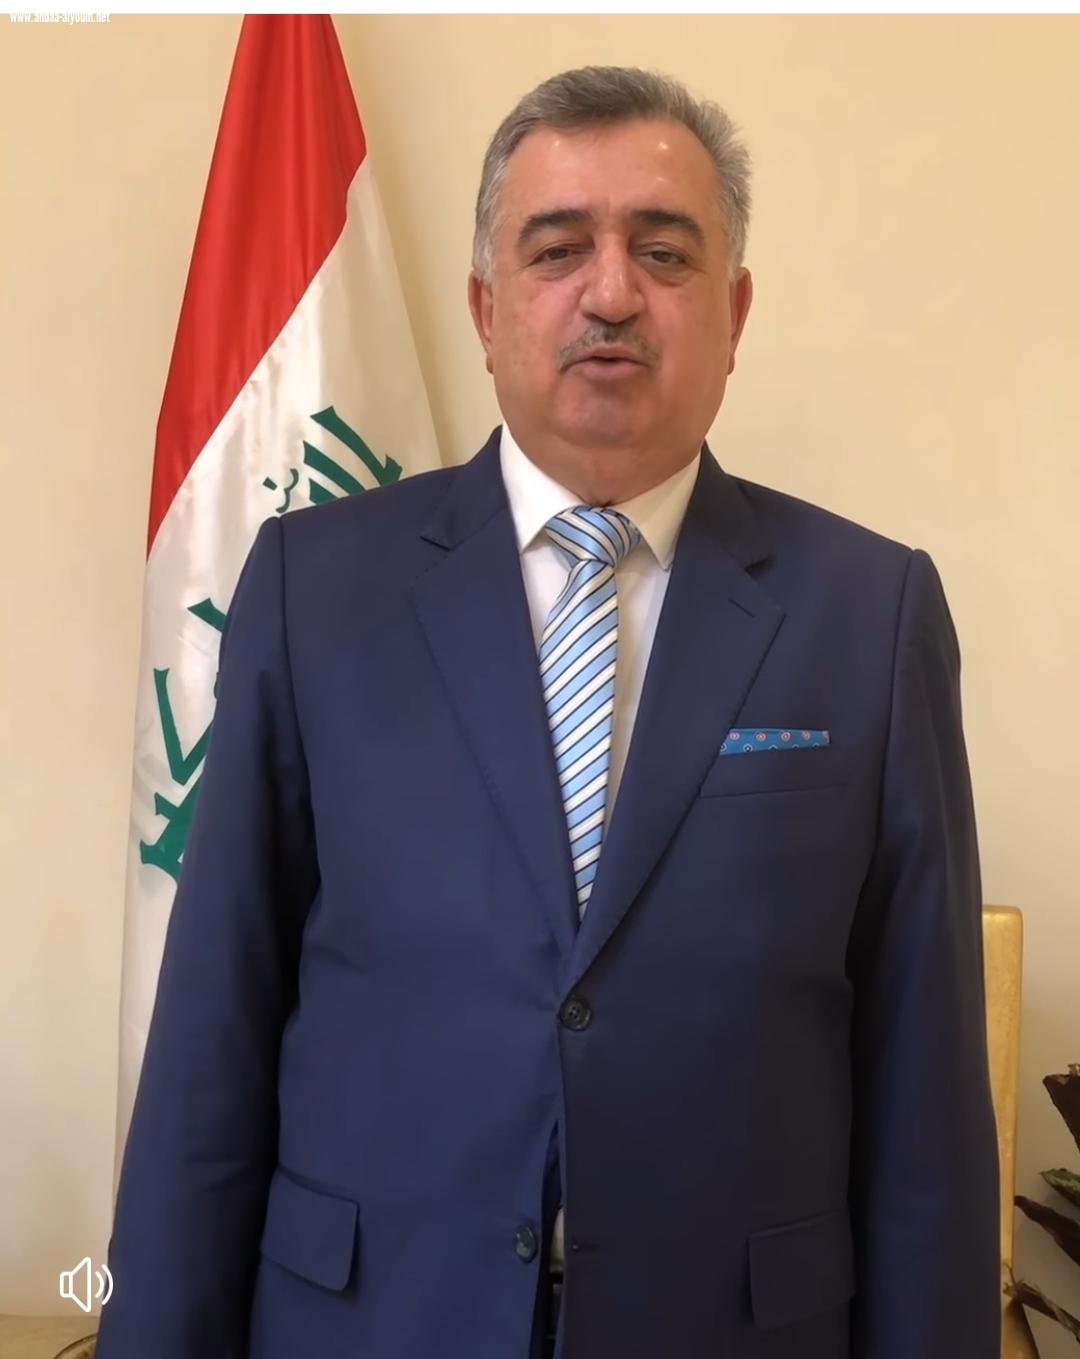 السفير عمر البرزنجي يقدم التهنئة القلبية بمناسبة قدوم عيد الفطر المبارك الى ابناء الشعب العراقي والقطري